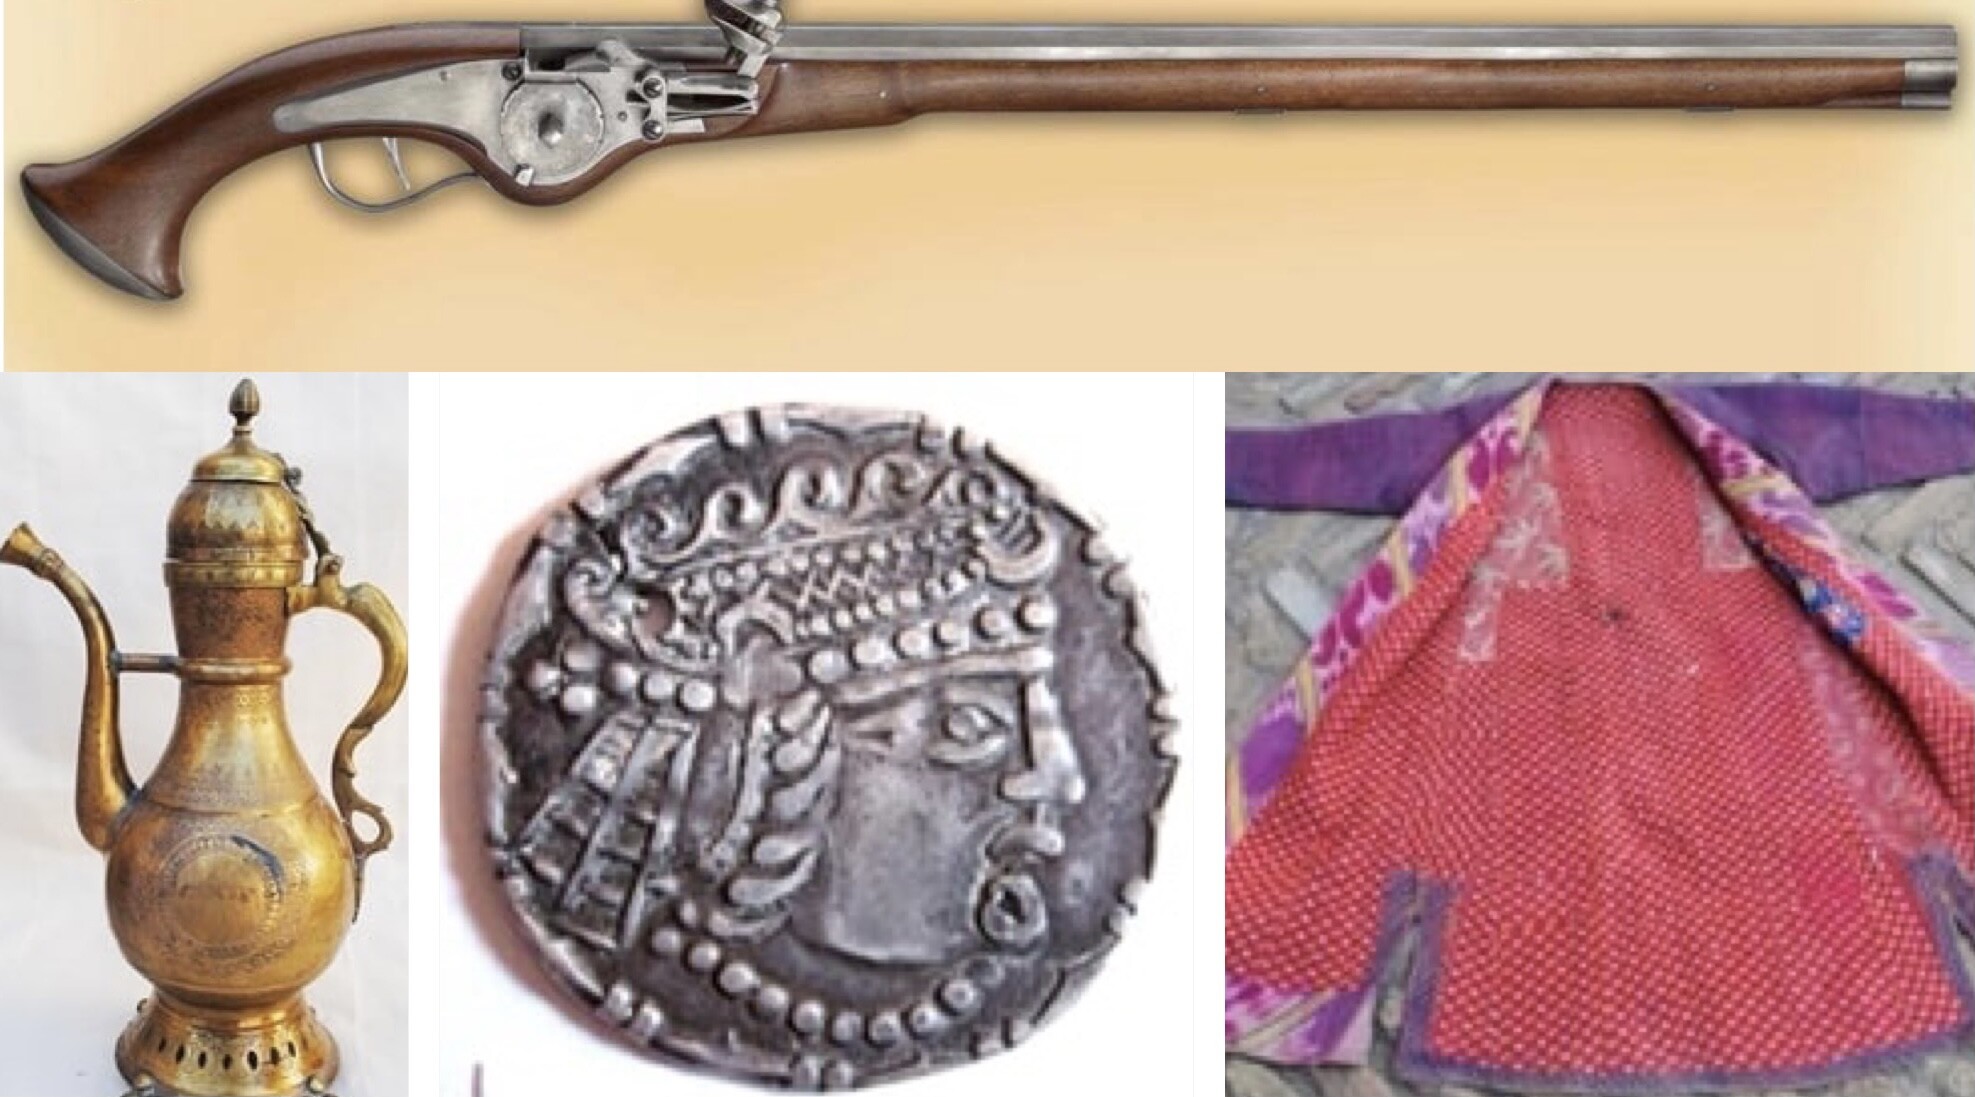 Некоторые экспонаты музея-заповедника «Ичан-кала» признаны подделками